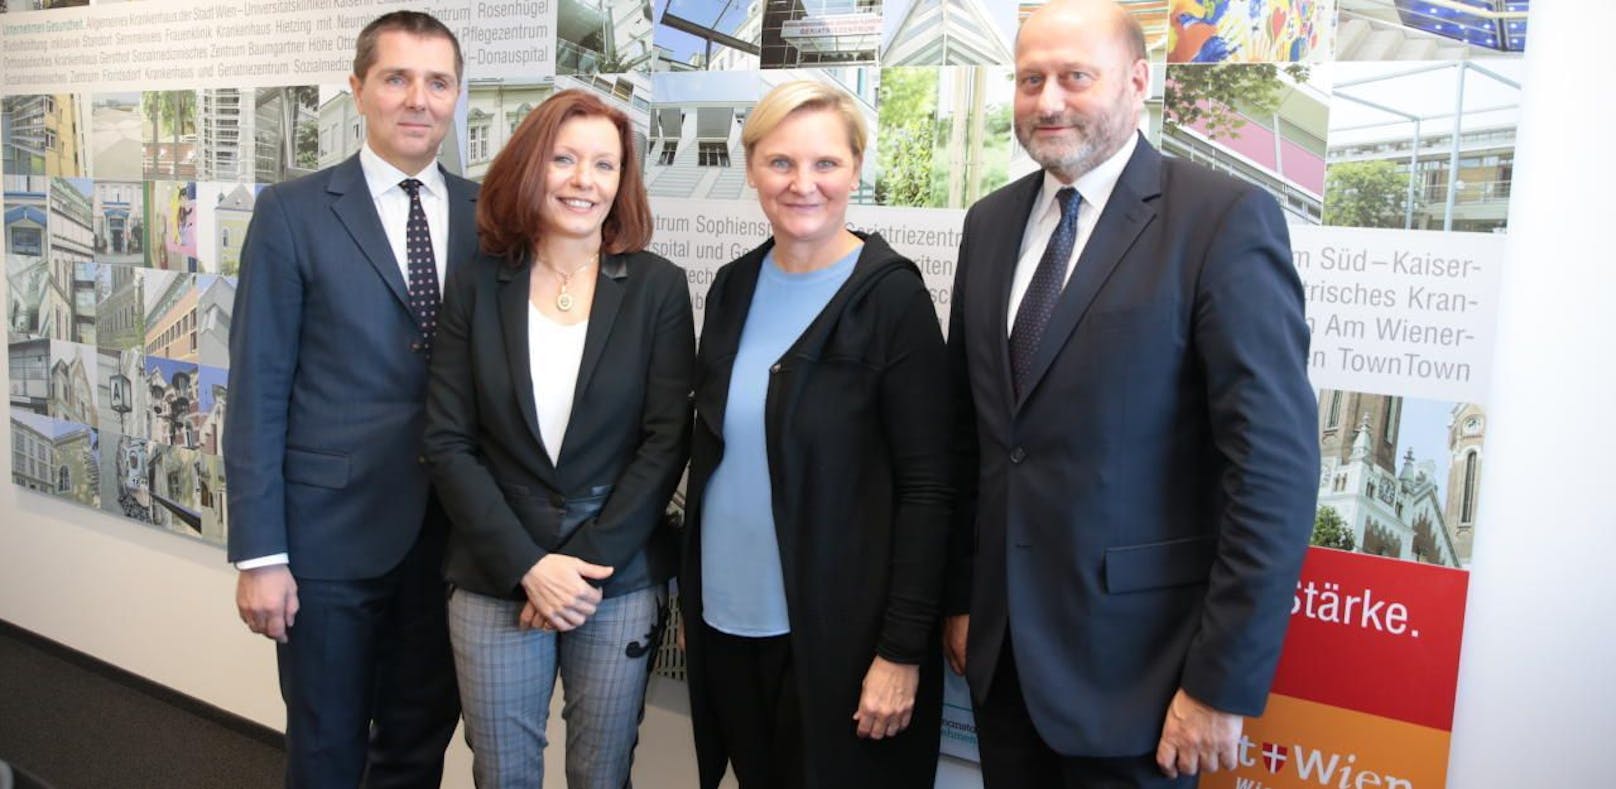 Das neue KAV-Führungstrio Michael Binder (links), Evelyn Kölldorfer-Leitgeb (2. von links) und Herwig Wetzlinger (rechts) mit Stadträtin Sandra Frauenberger (2. von rechts).